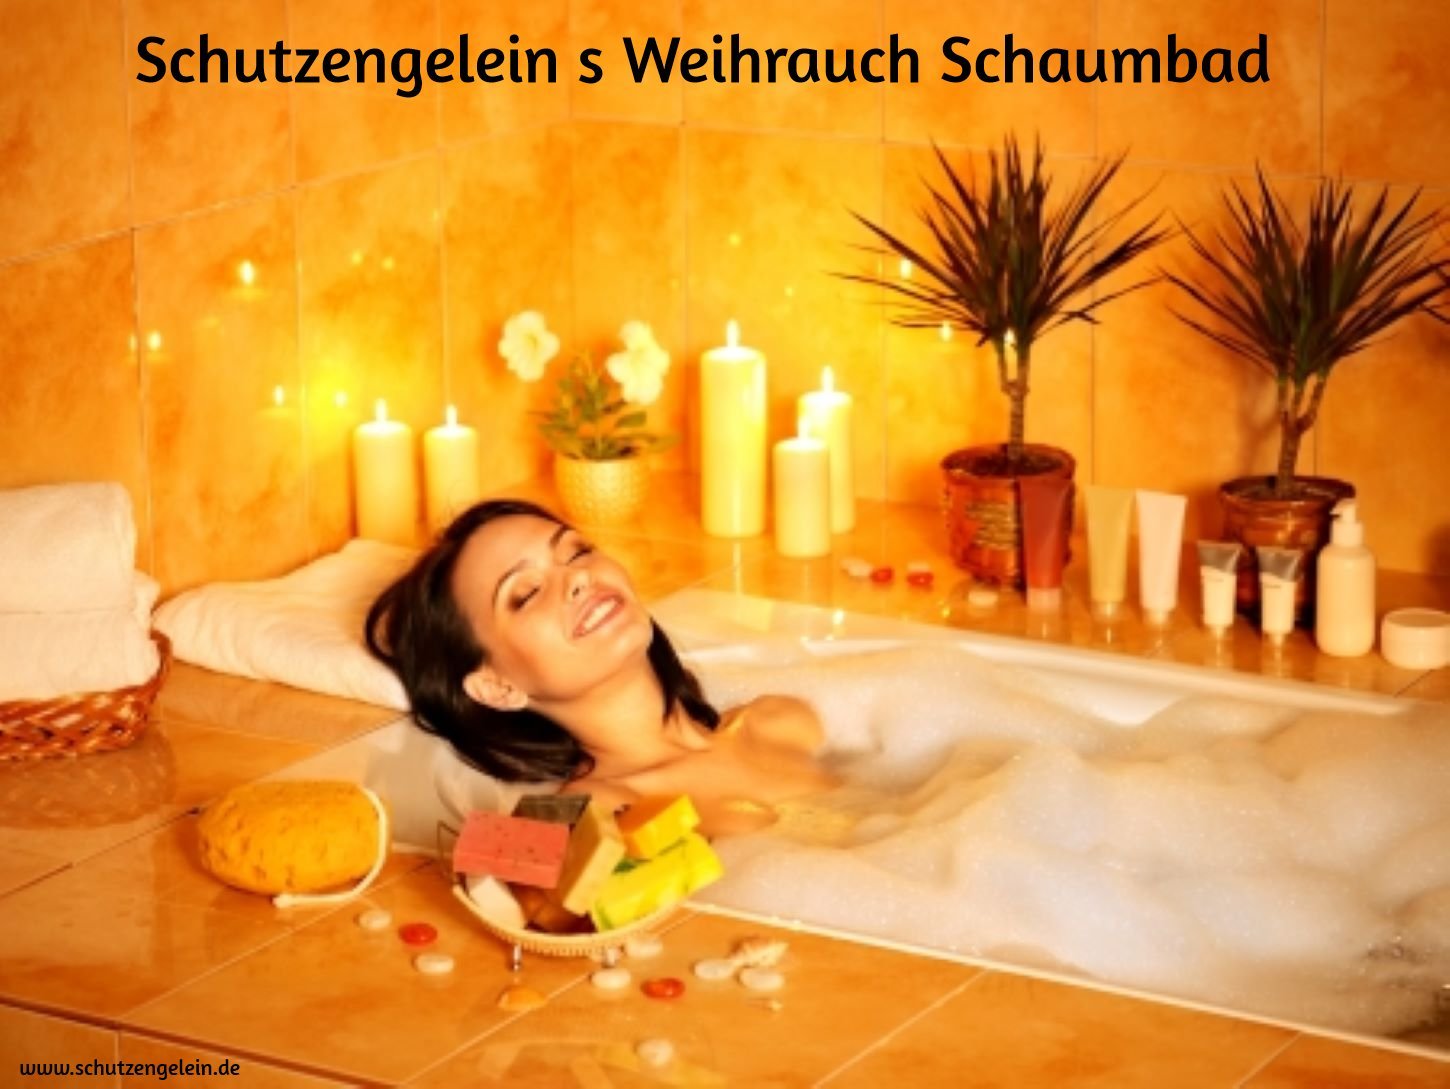 weihrauch_schaumbad_schutzengelein_de_kosmetik_1